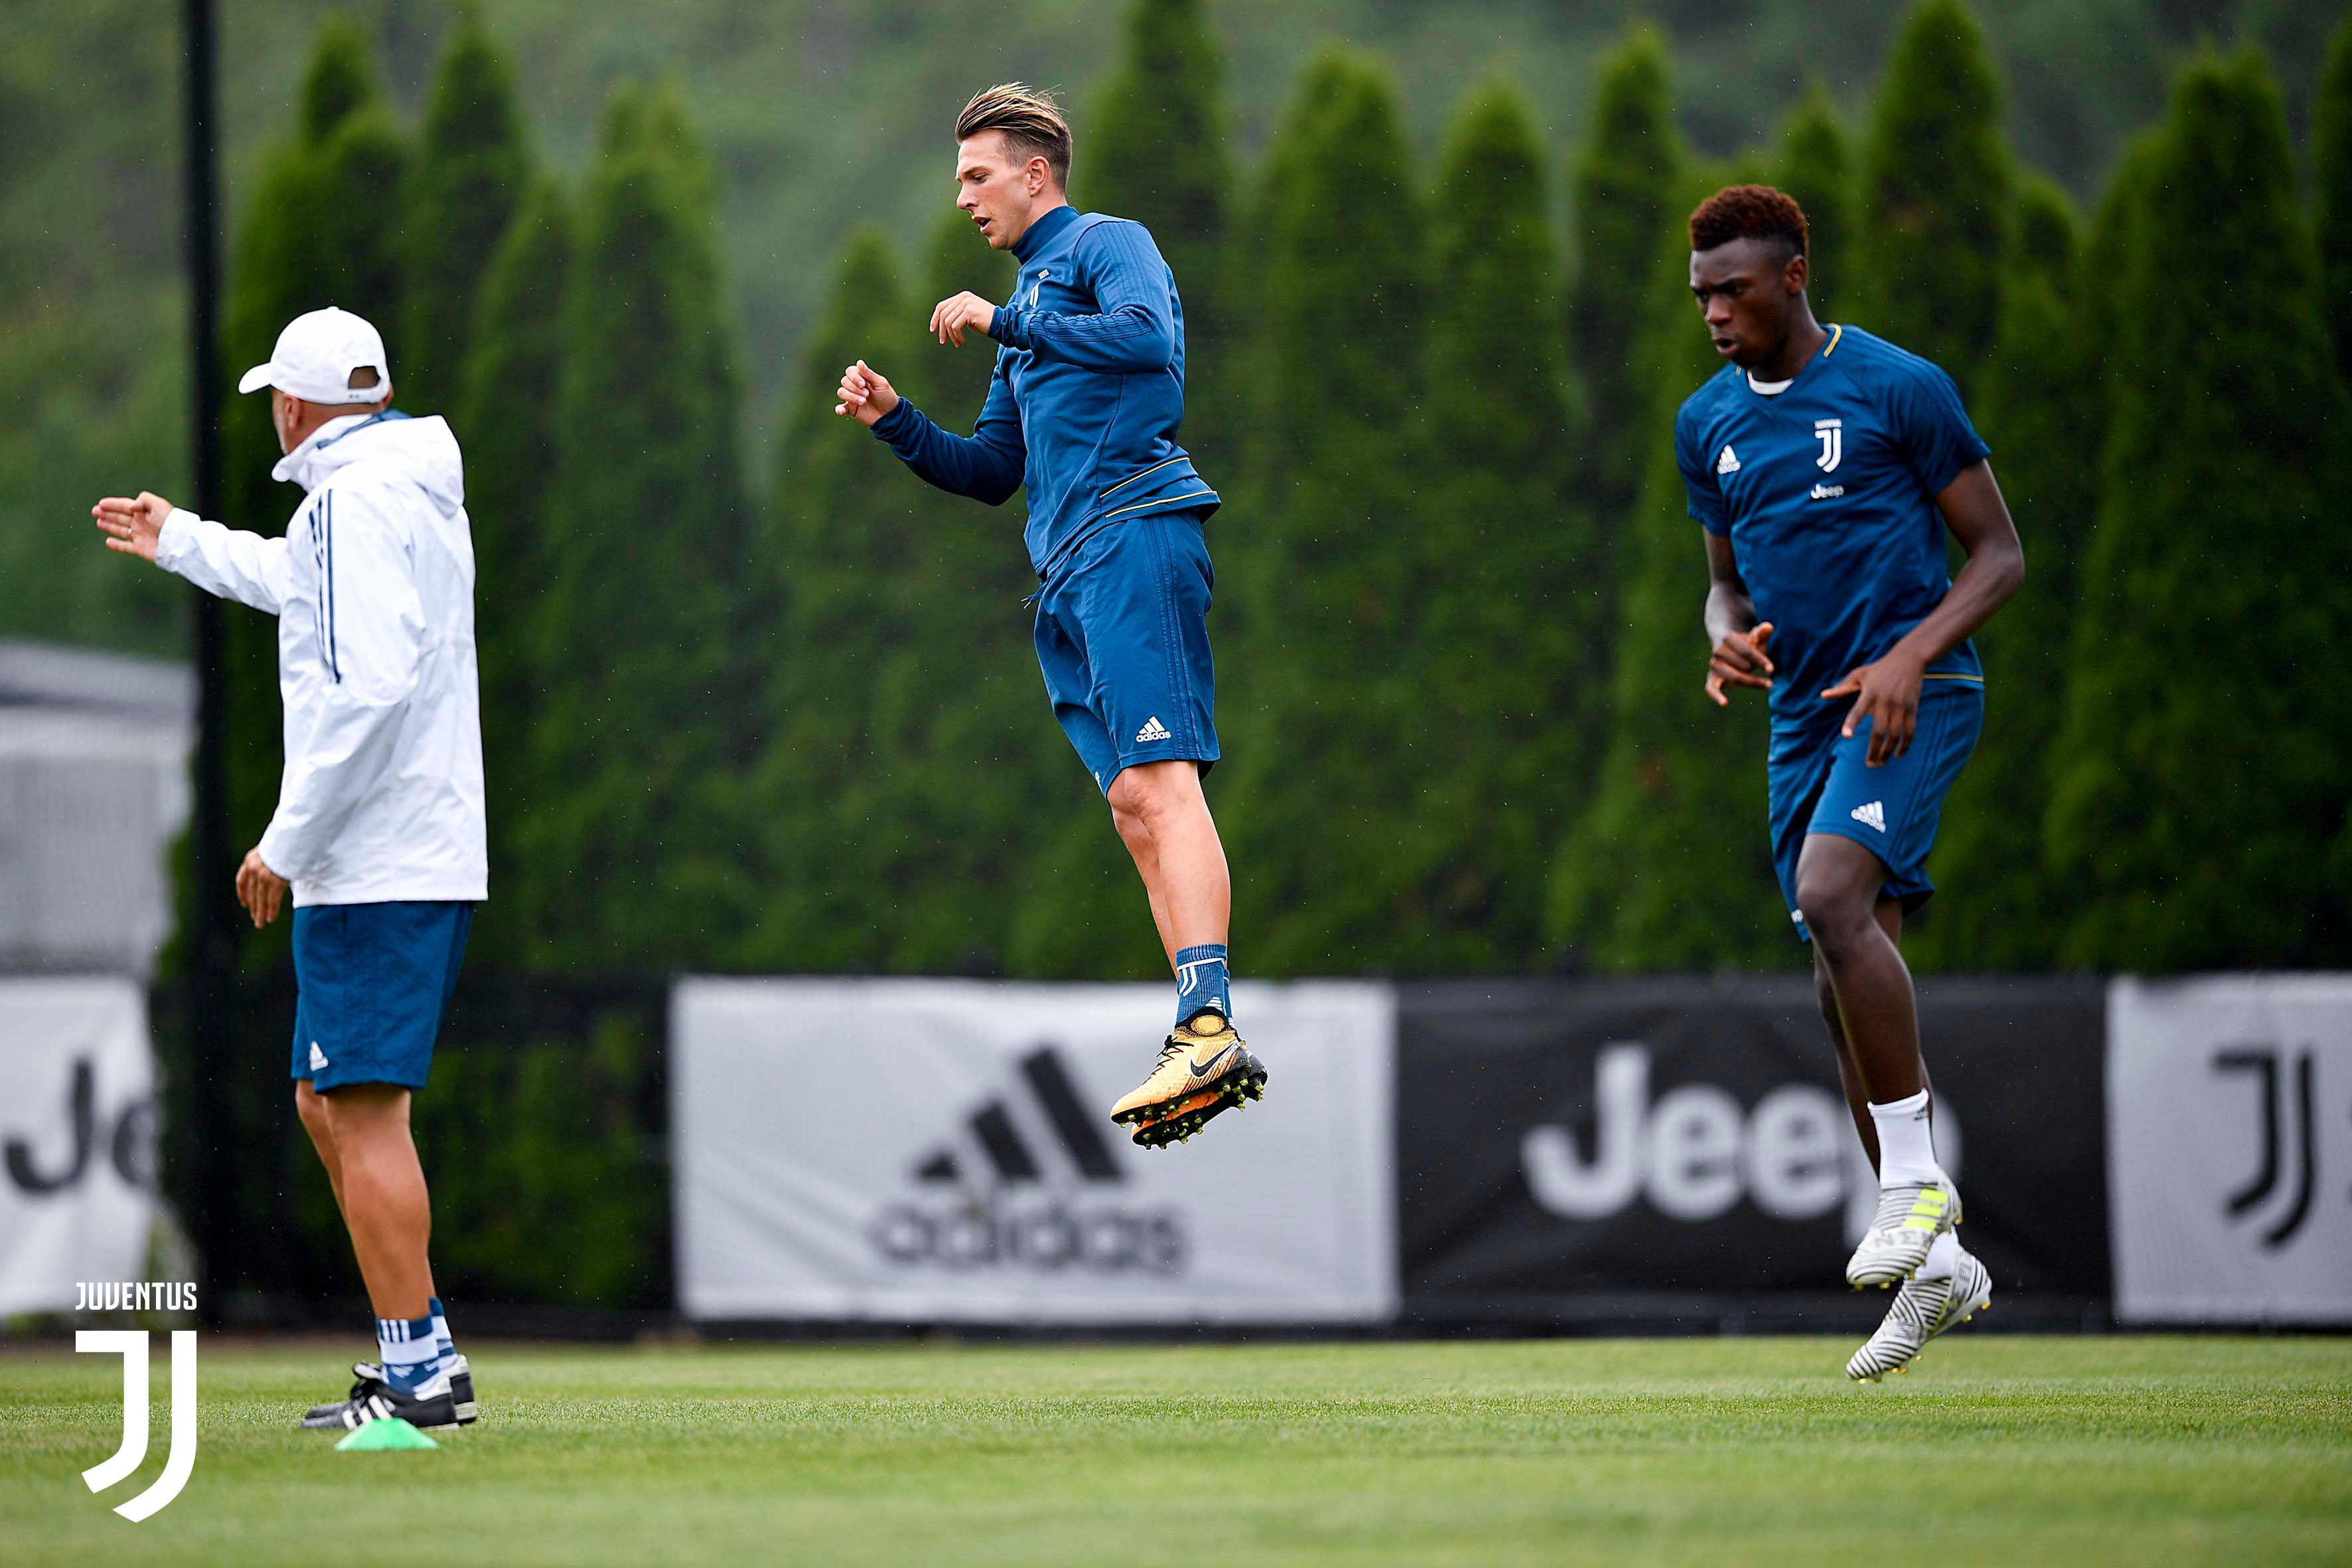 Bernardeschi arrives as Juve begin final leg of preseason tour